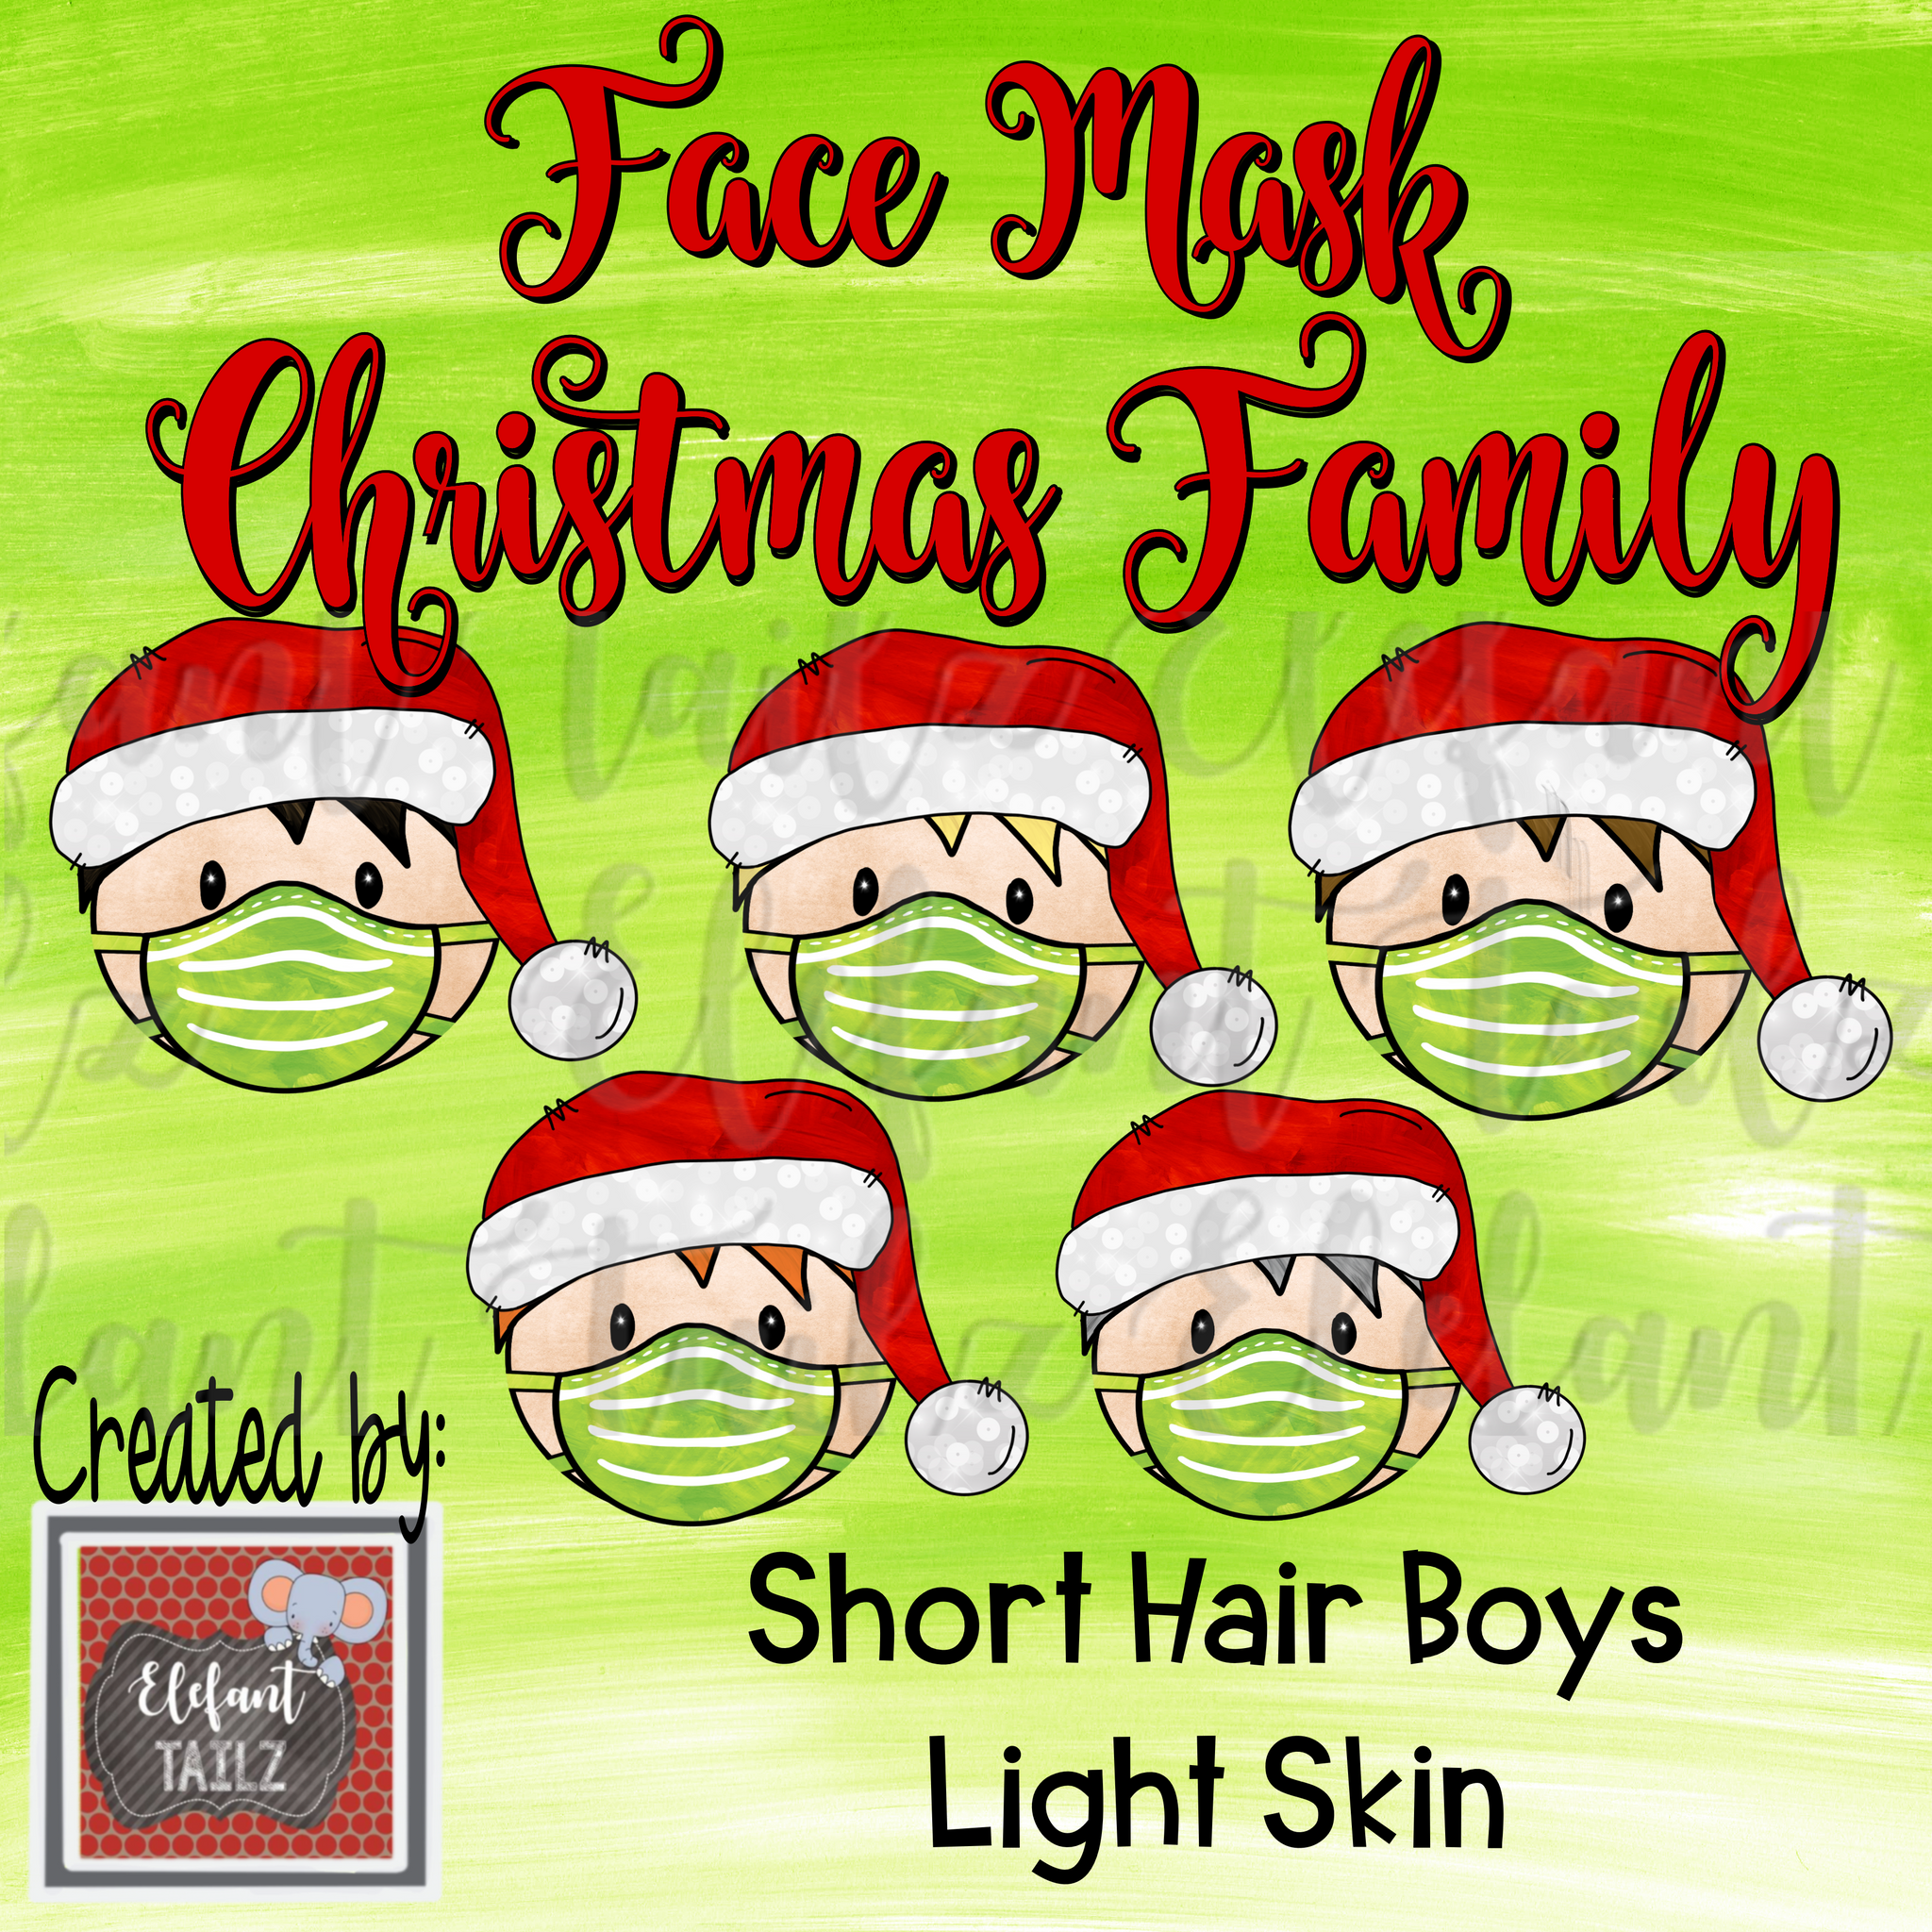 Face Mask Christmas Family - Short Hair Boys - Light Skin